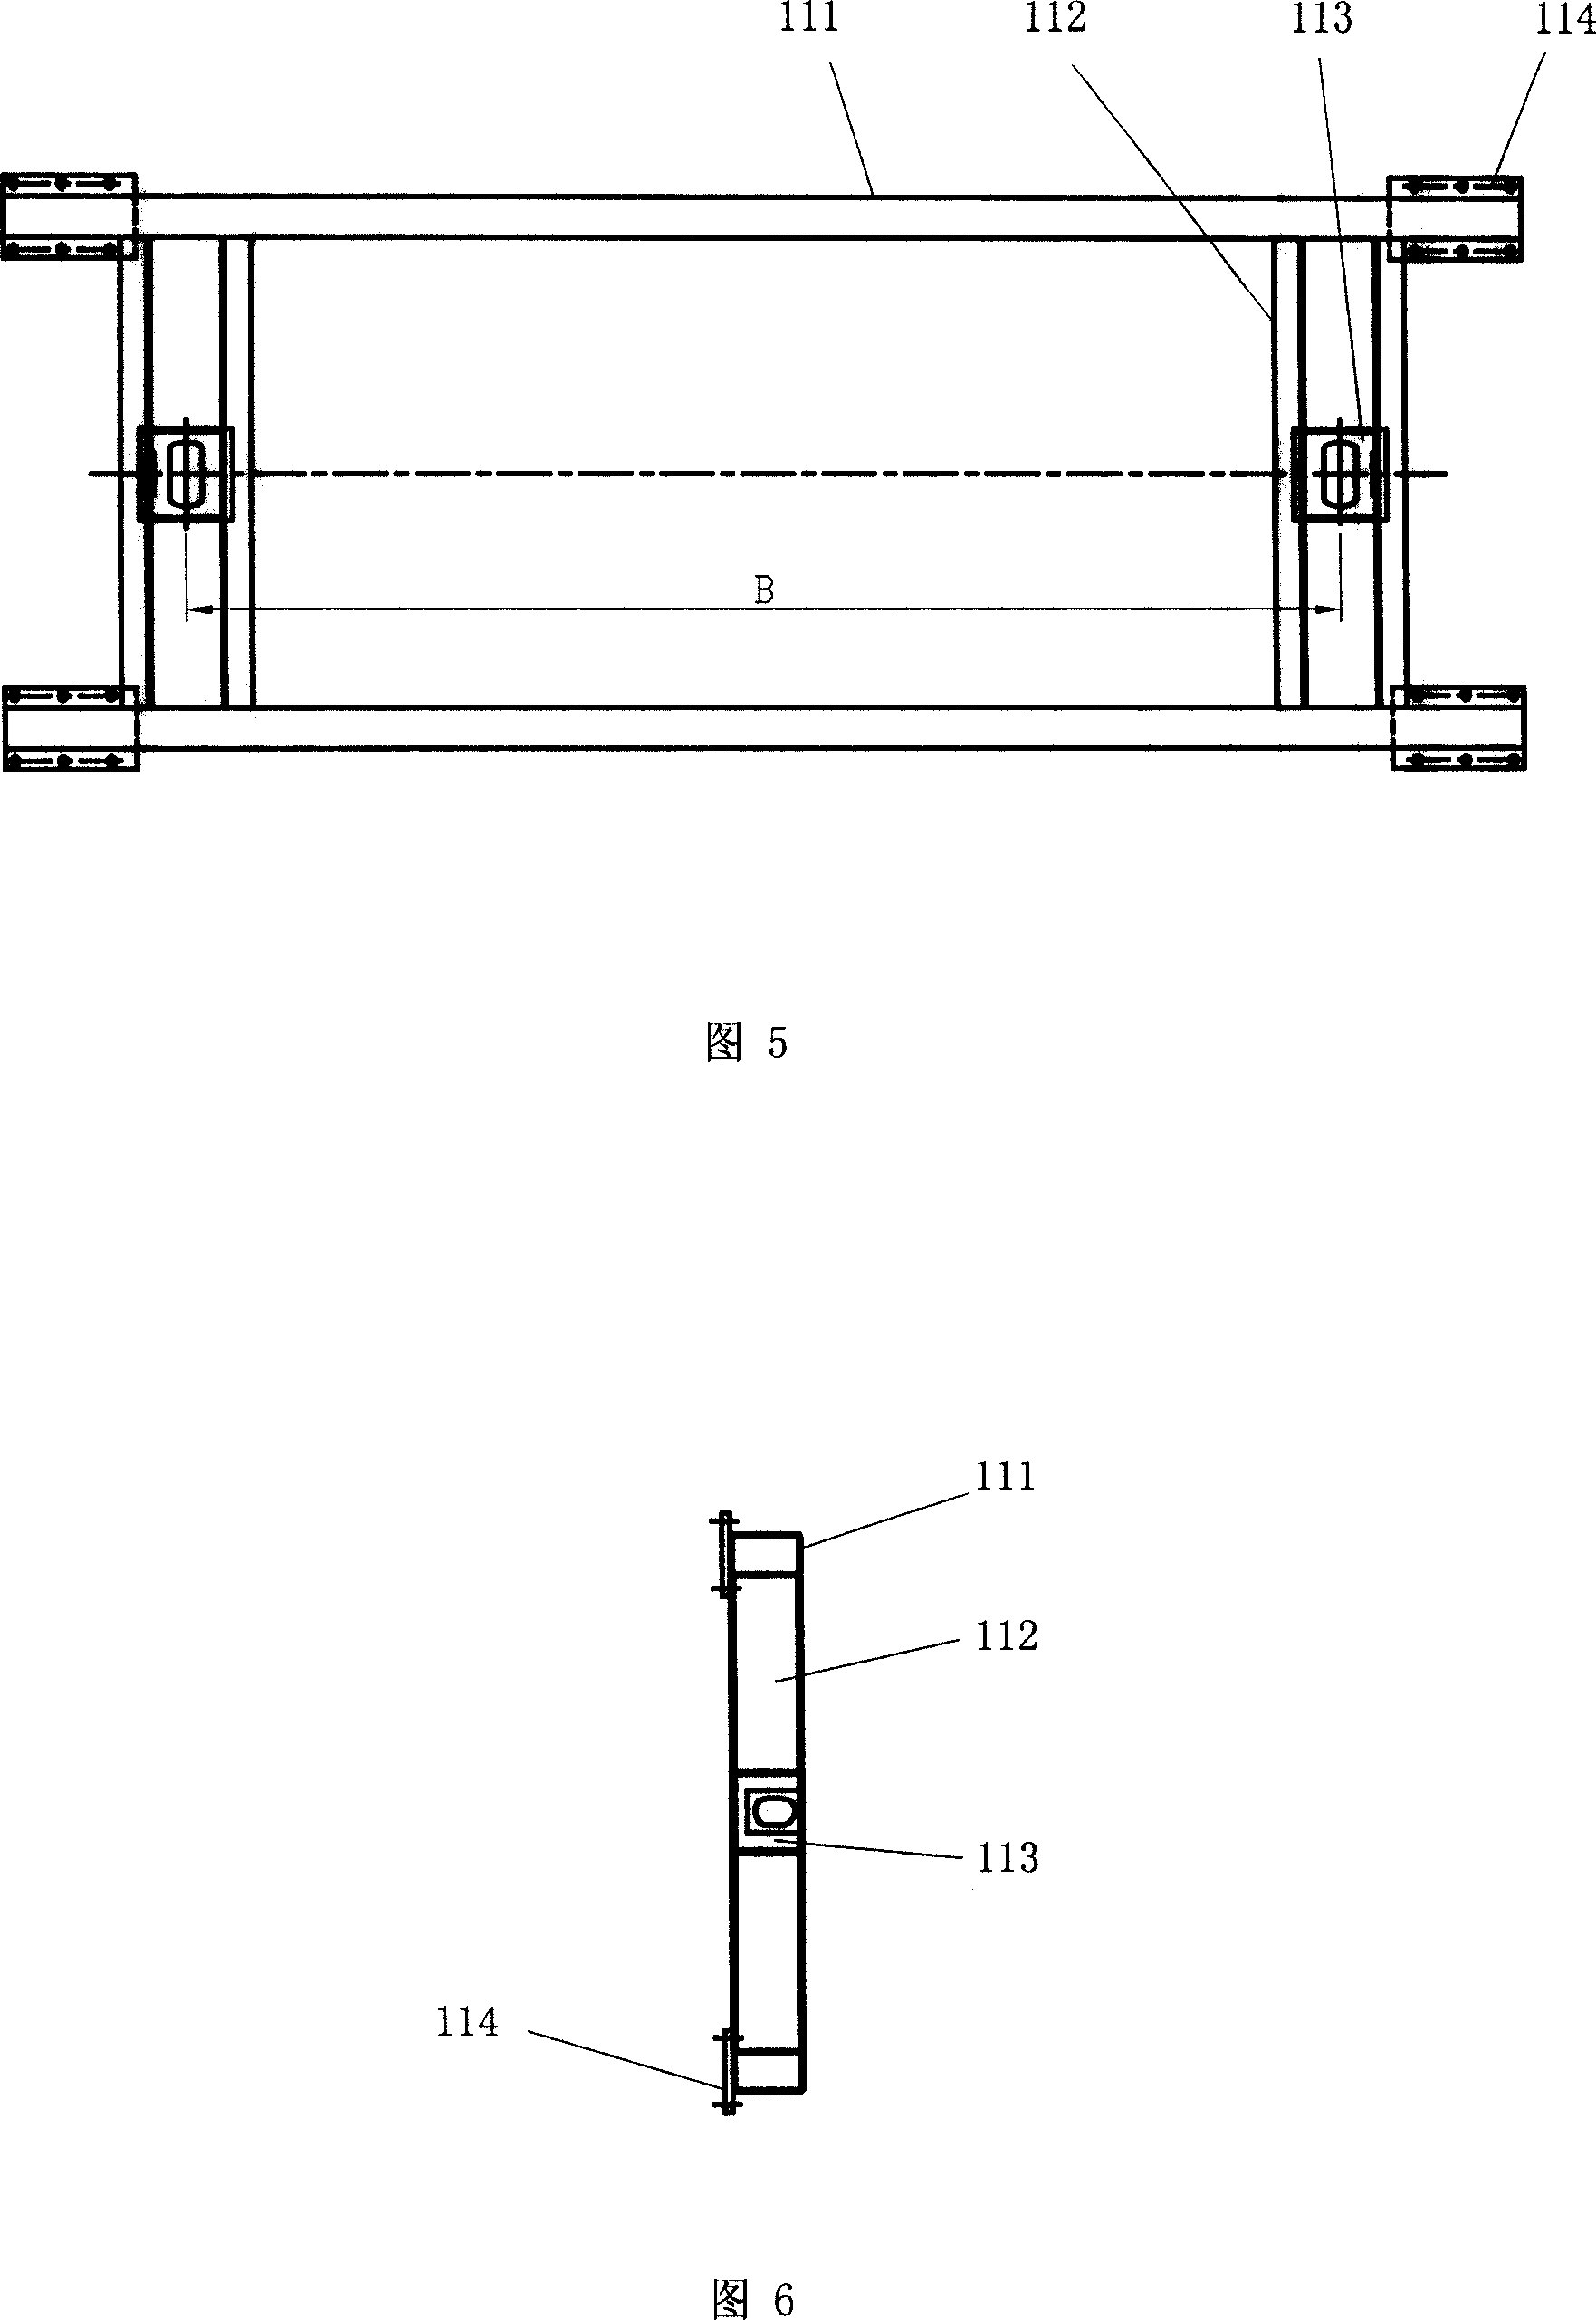 Transportation frame for big cabinet, and installation method